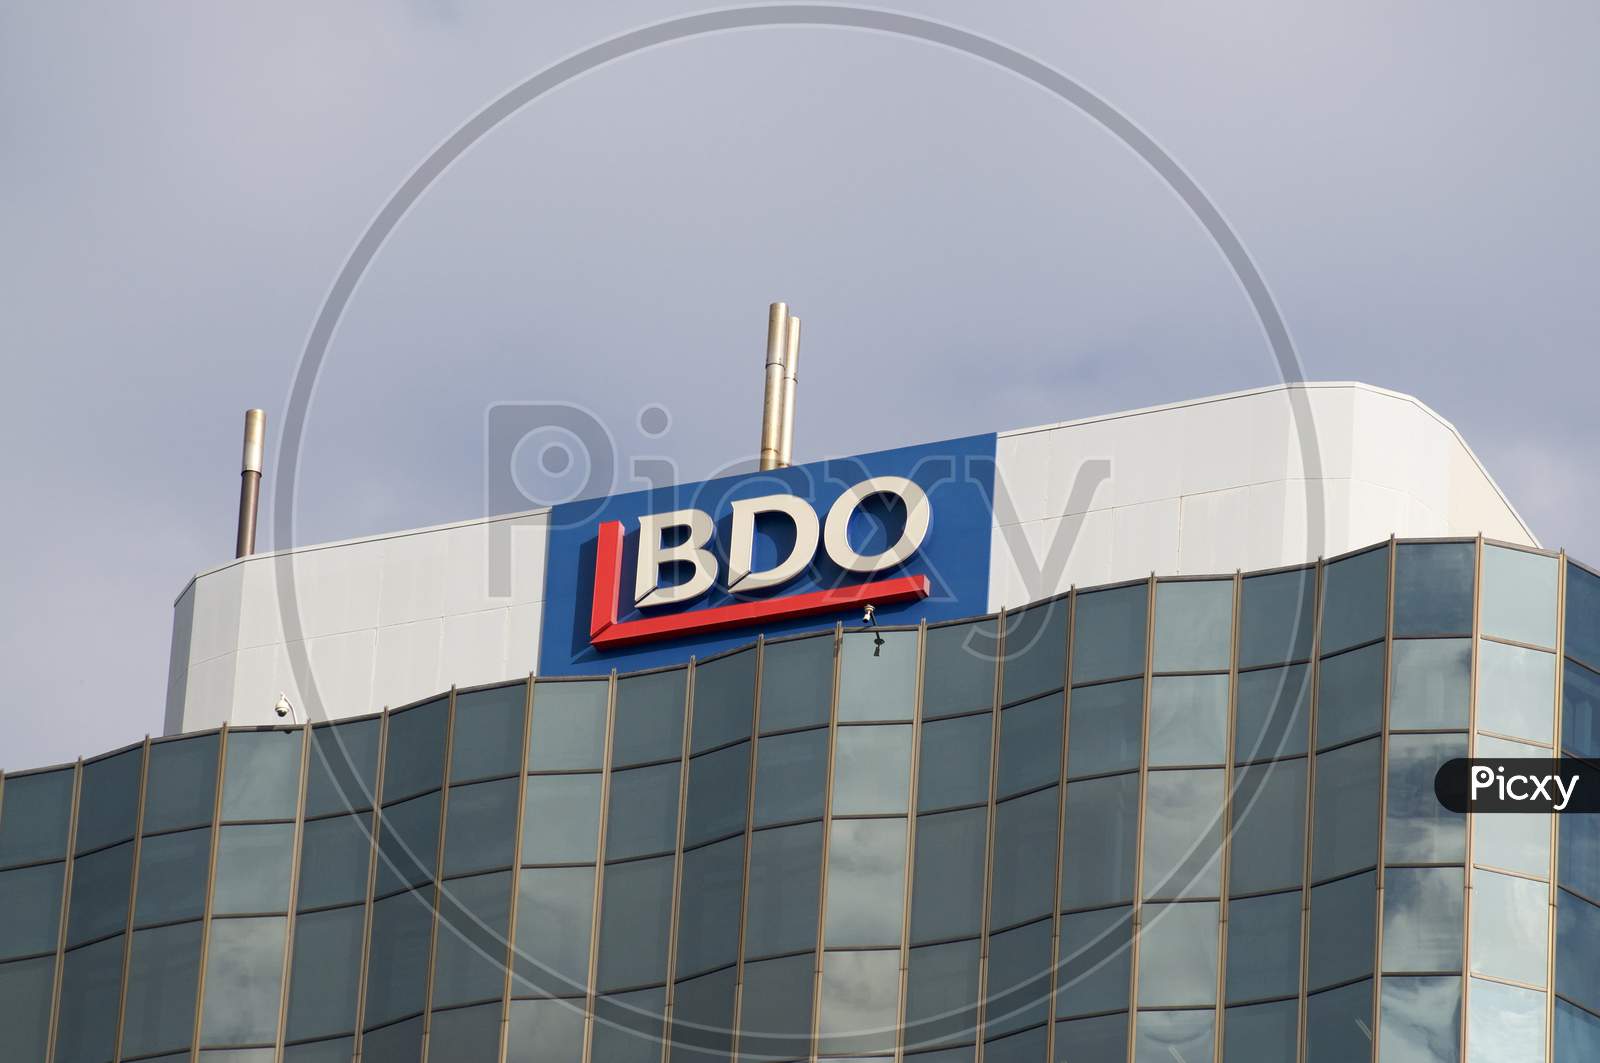 Bdo Logo On A Building In Brisbane